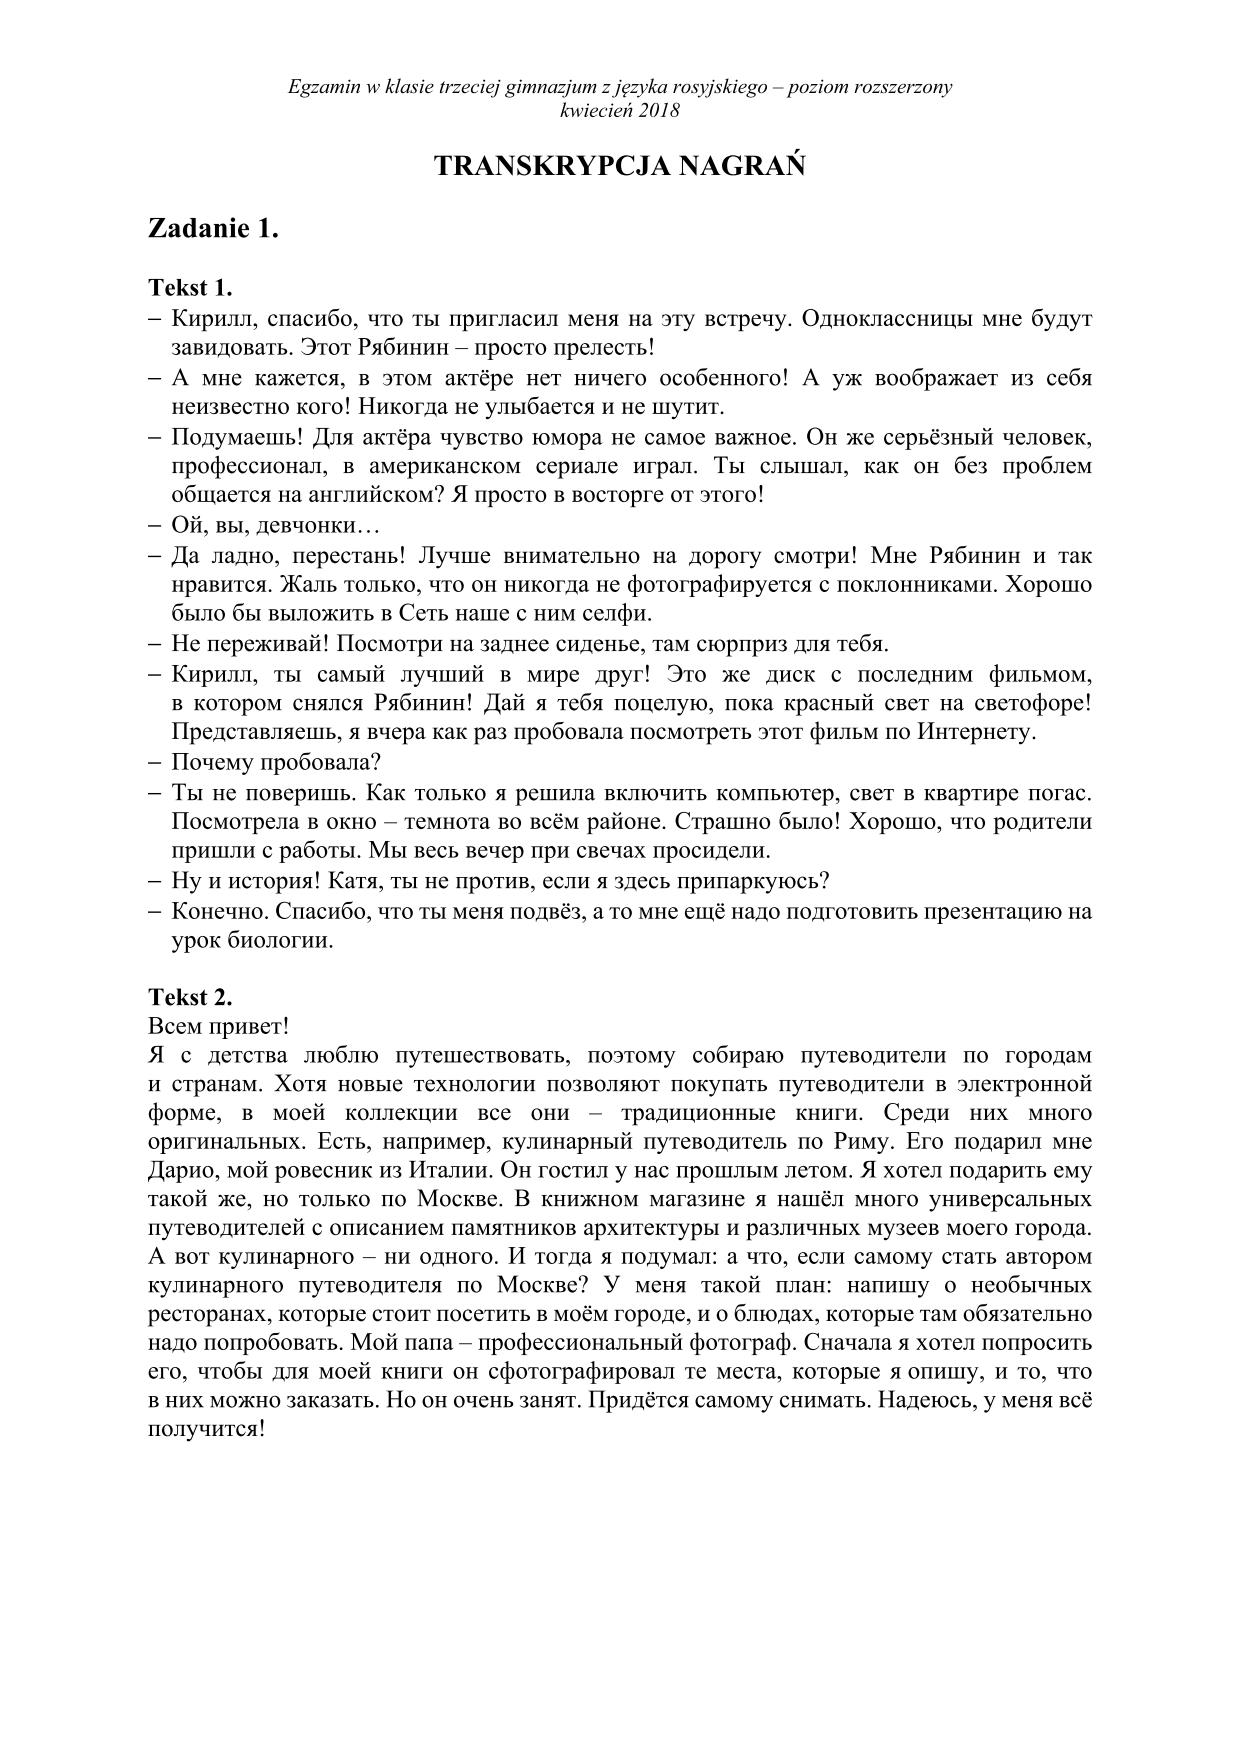 transkrypcja-rosyjski-poziom-rozszerzony-egzamin-gimnazjalny-2018 - 1